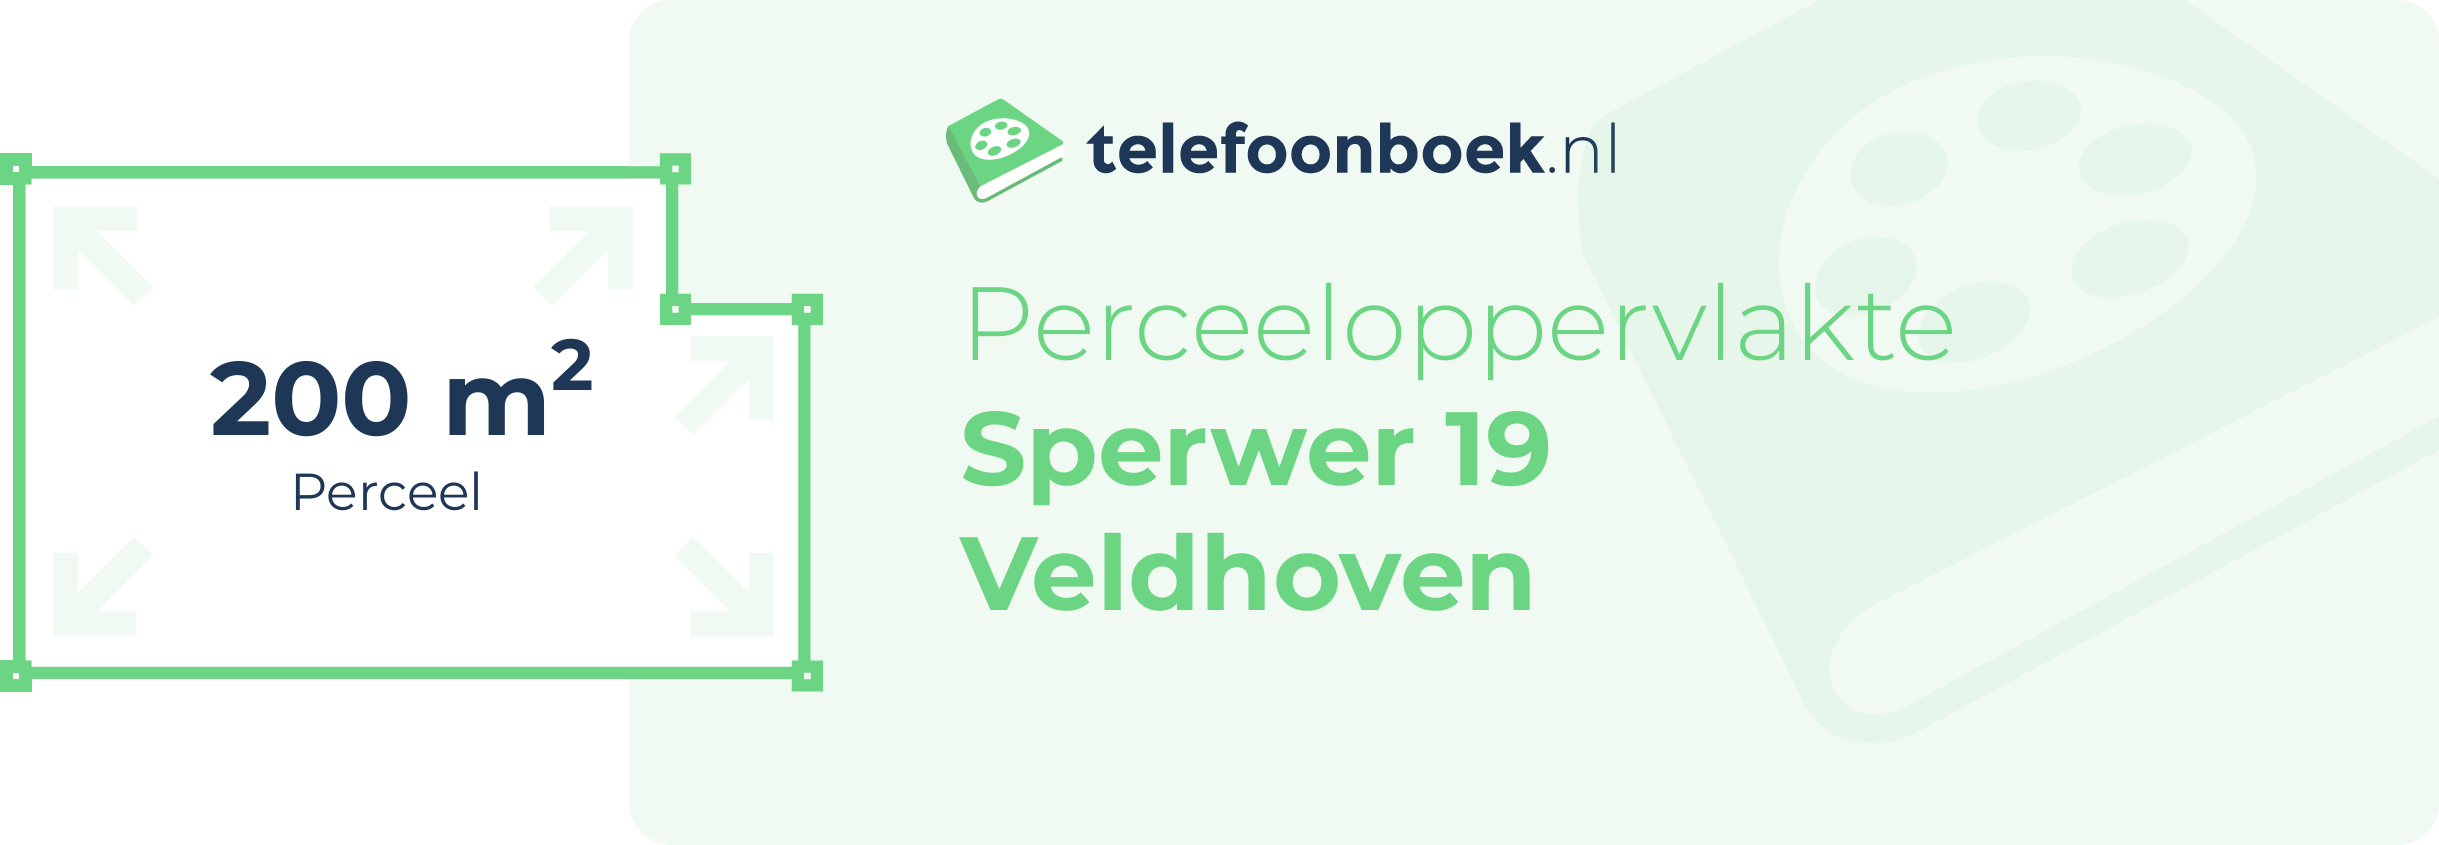 Perceeloppervlakte Sperwer 19 Veldhoven